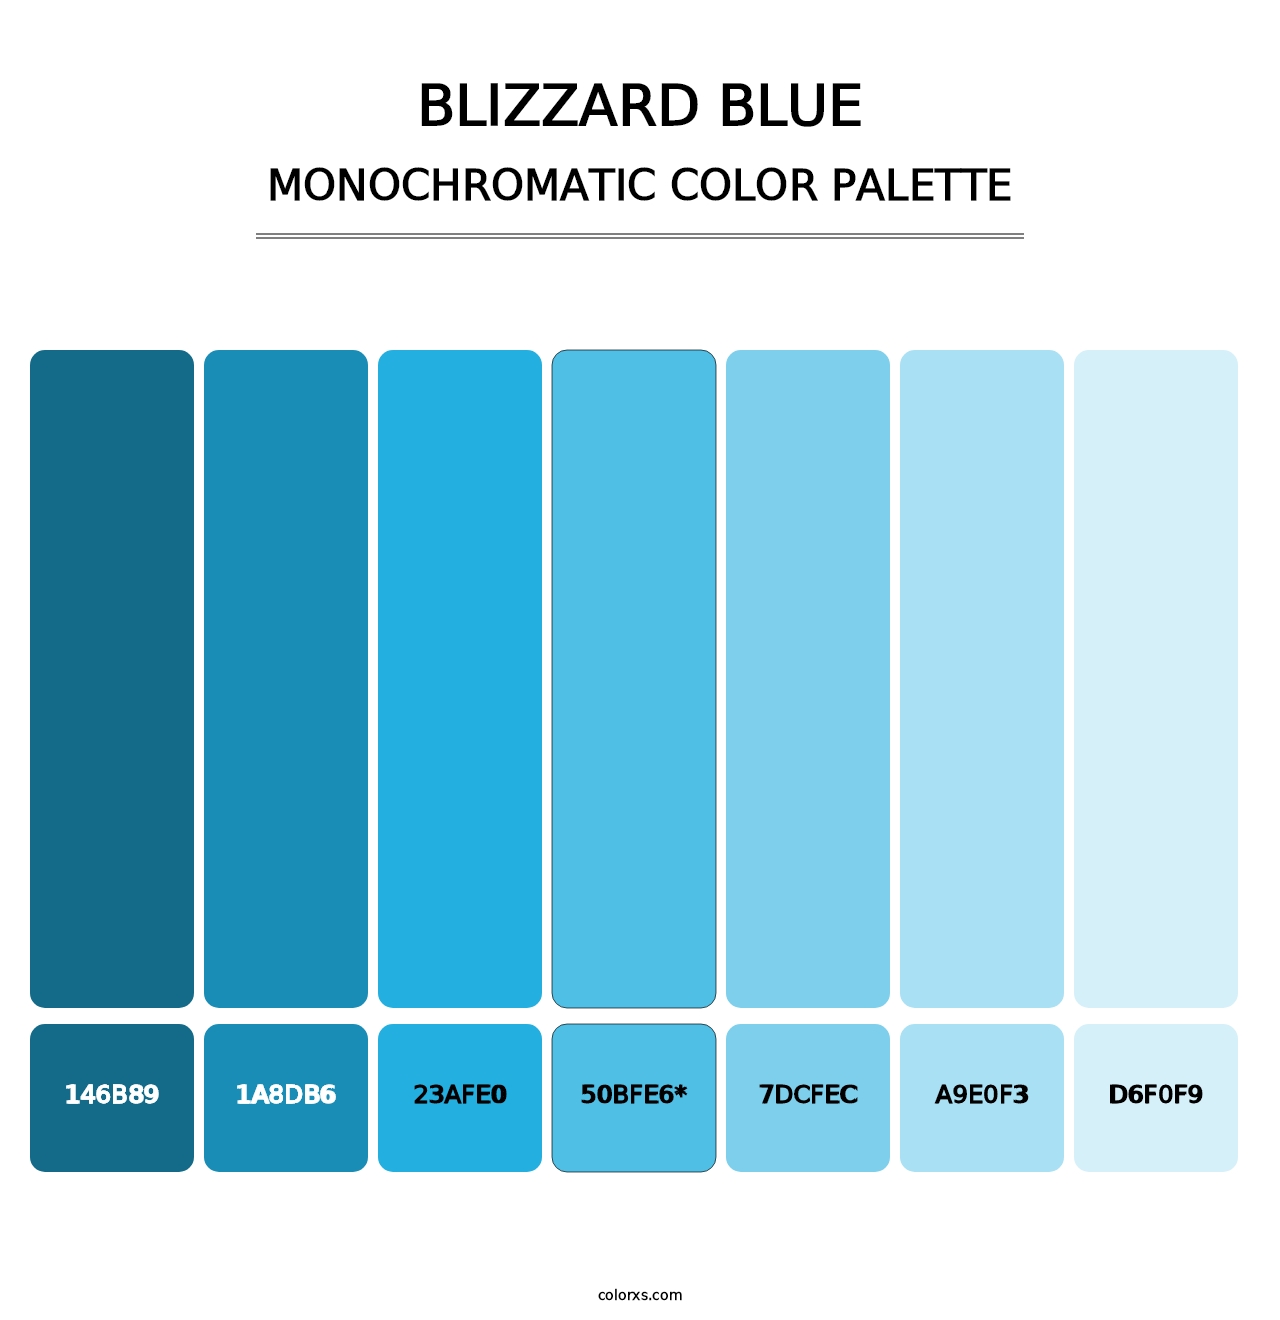 Blizzard Blue - Monochromatic Color Palette